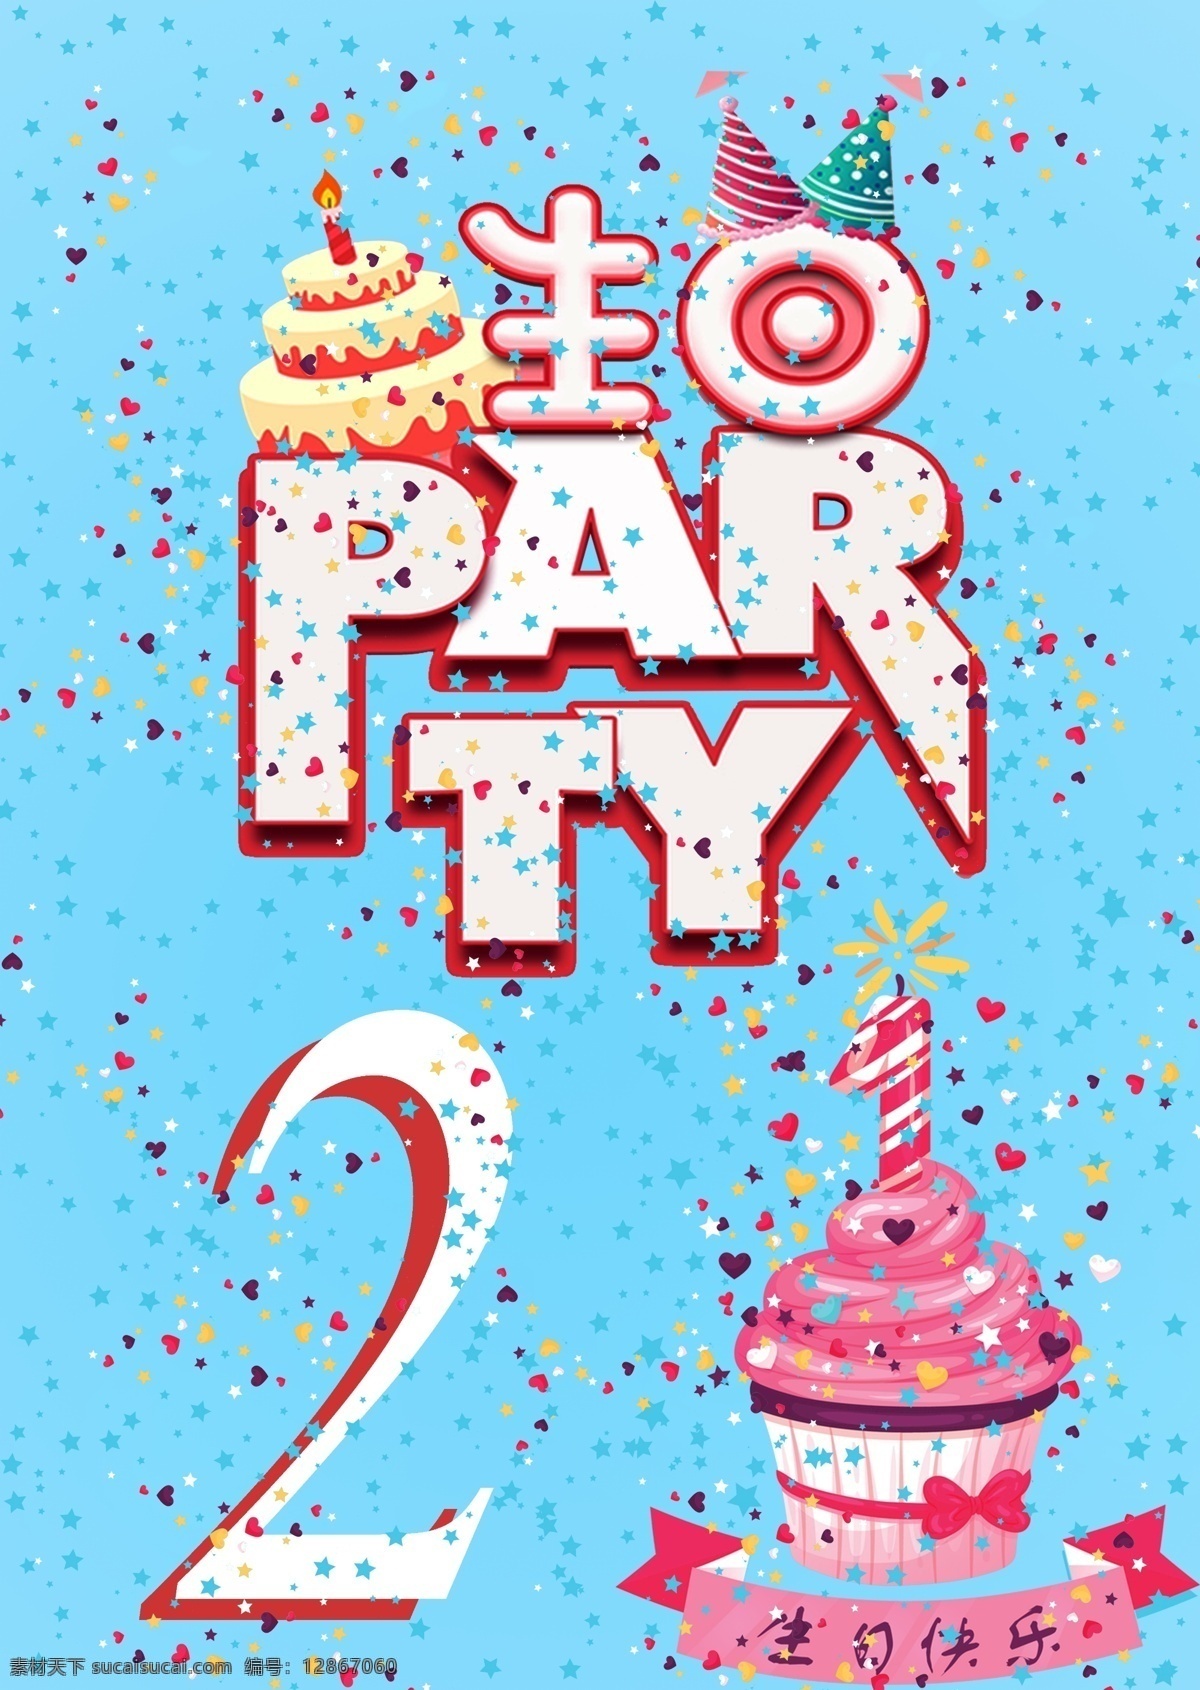 生日 快乐 party 生日作品 海报 设计名片 广告牌 喷绘 写真 等等